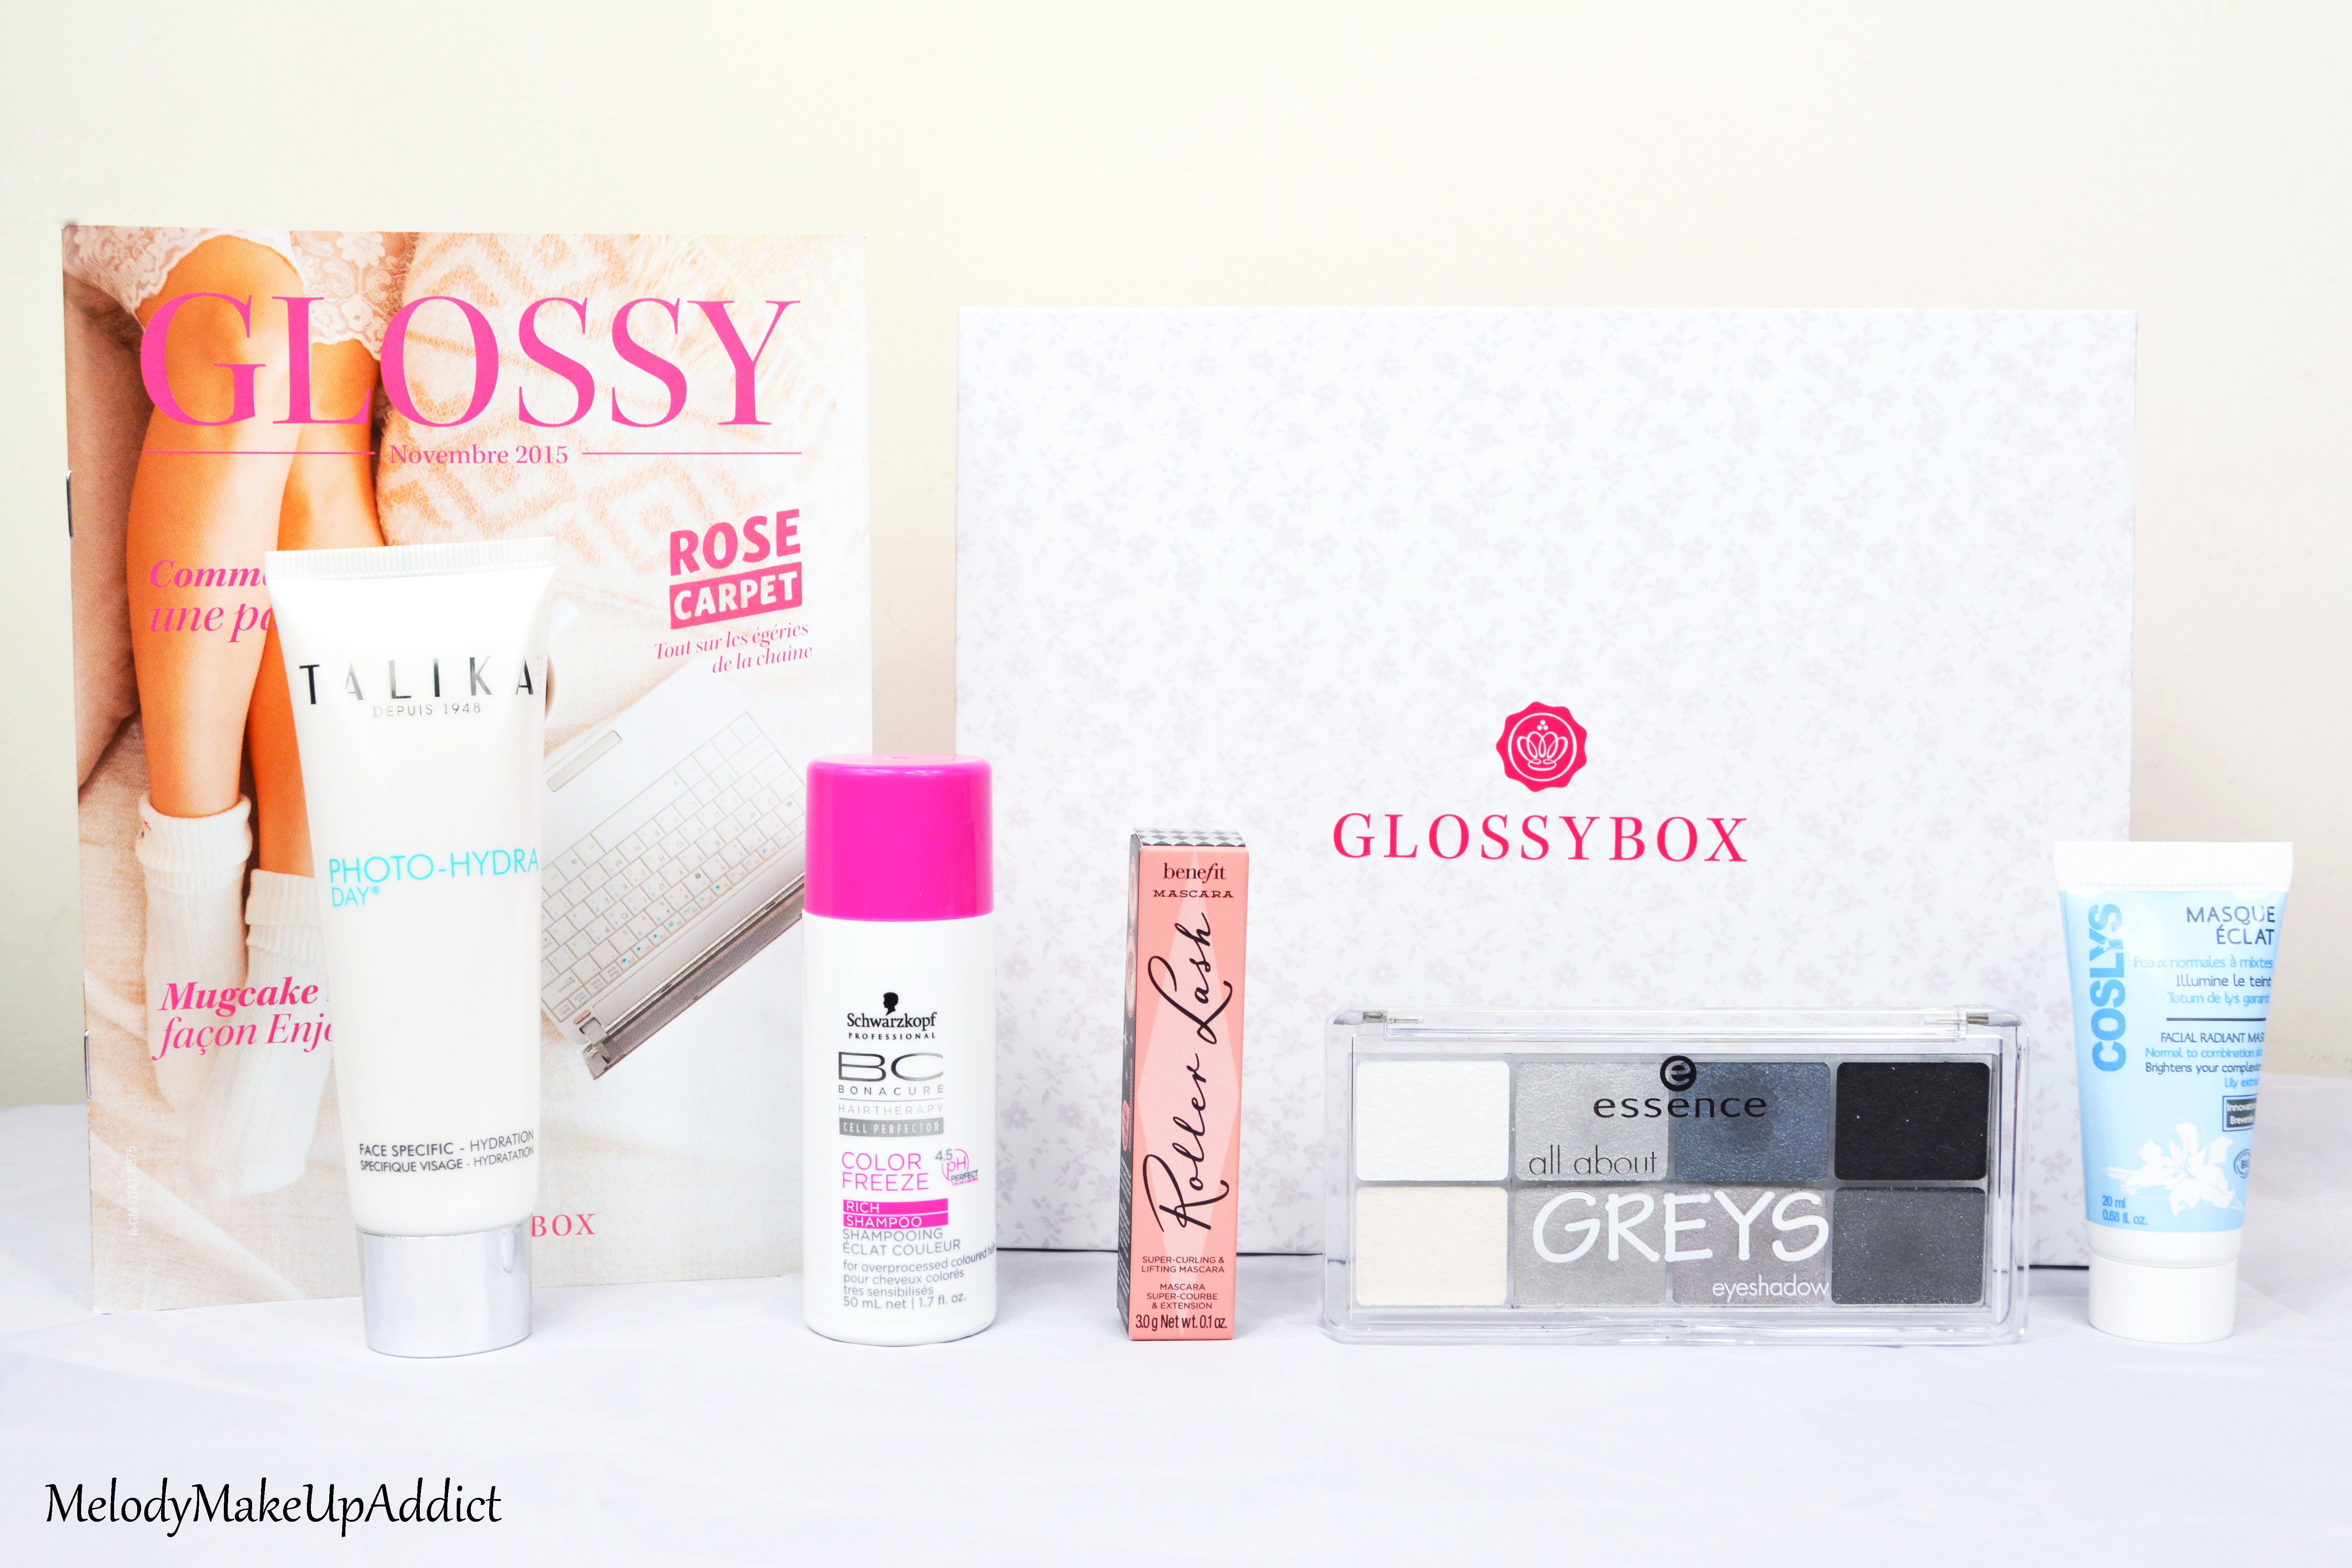 La Glossybox en collaboration avec Rose Carpet